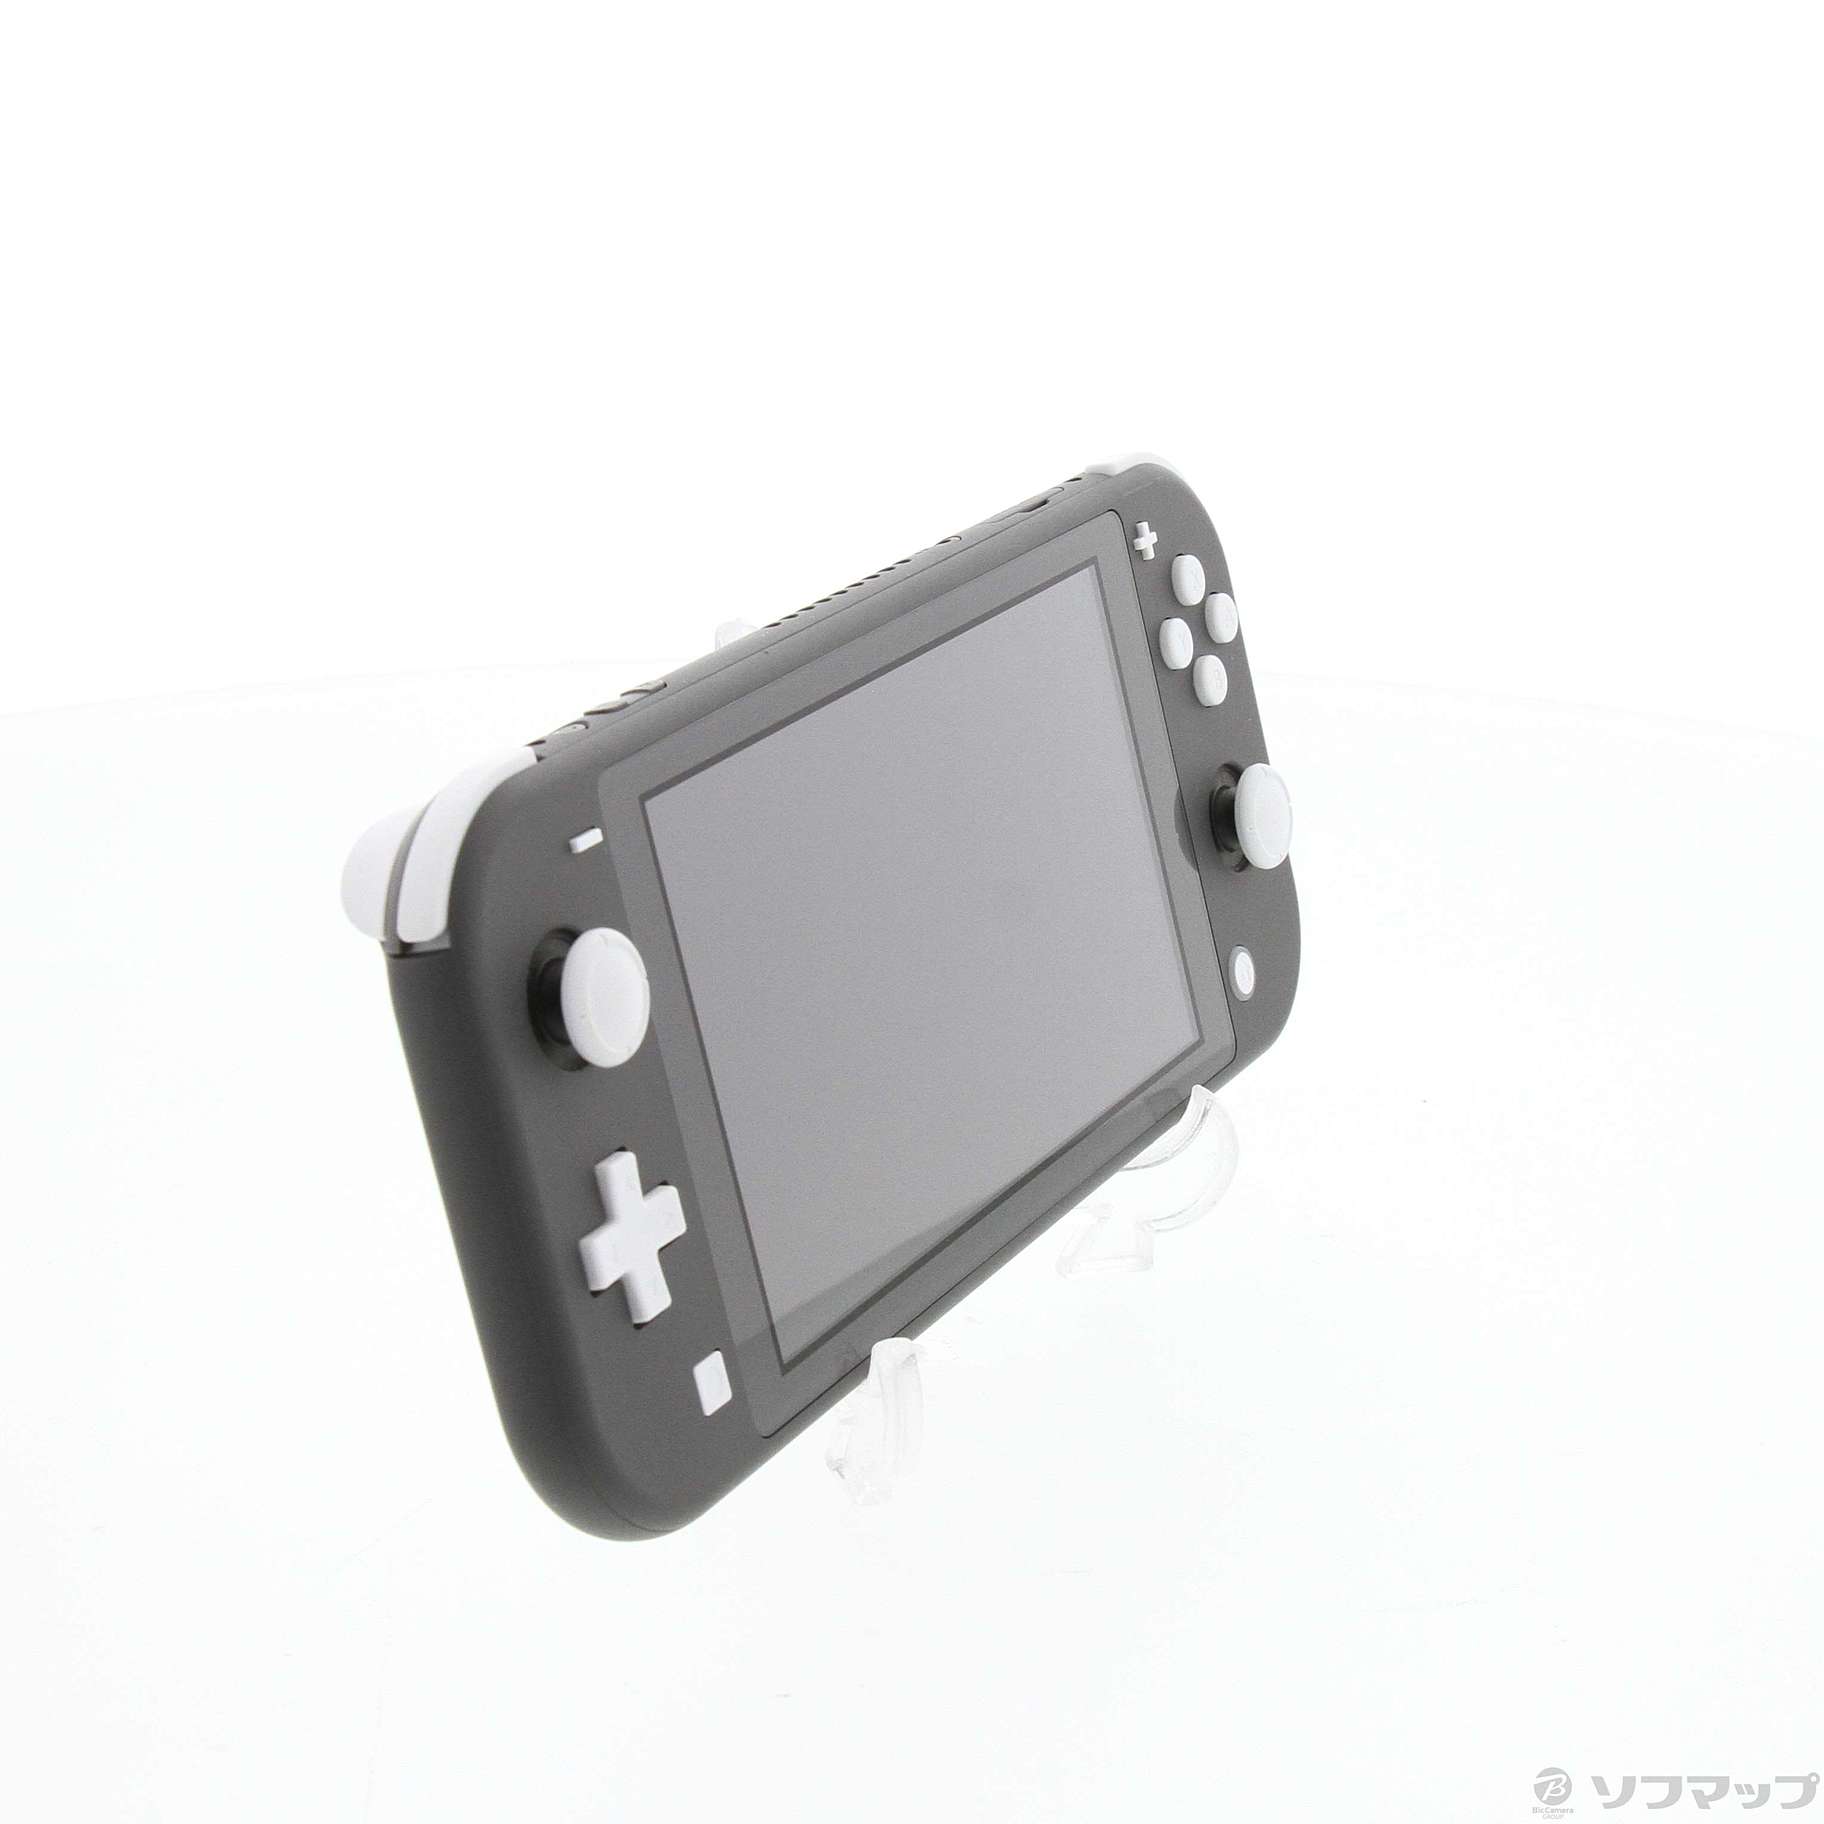 中古】Nintendo Switch Lite グレー [2133052585114] - リコレ 